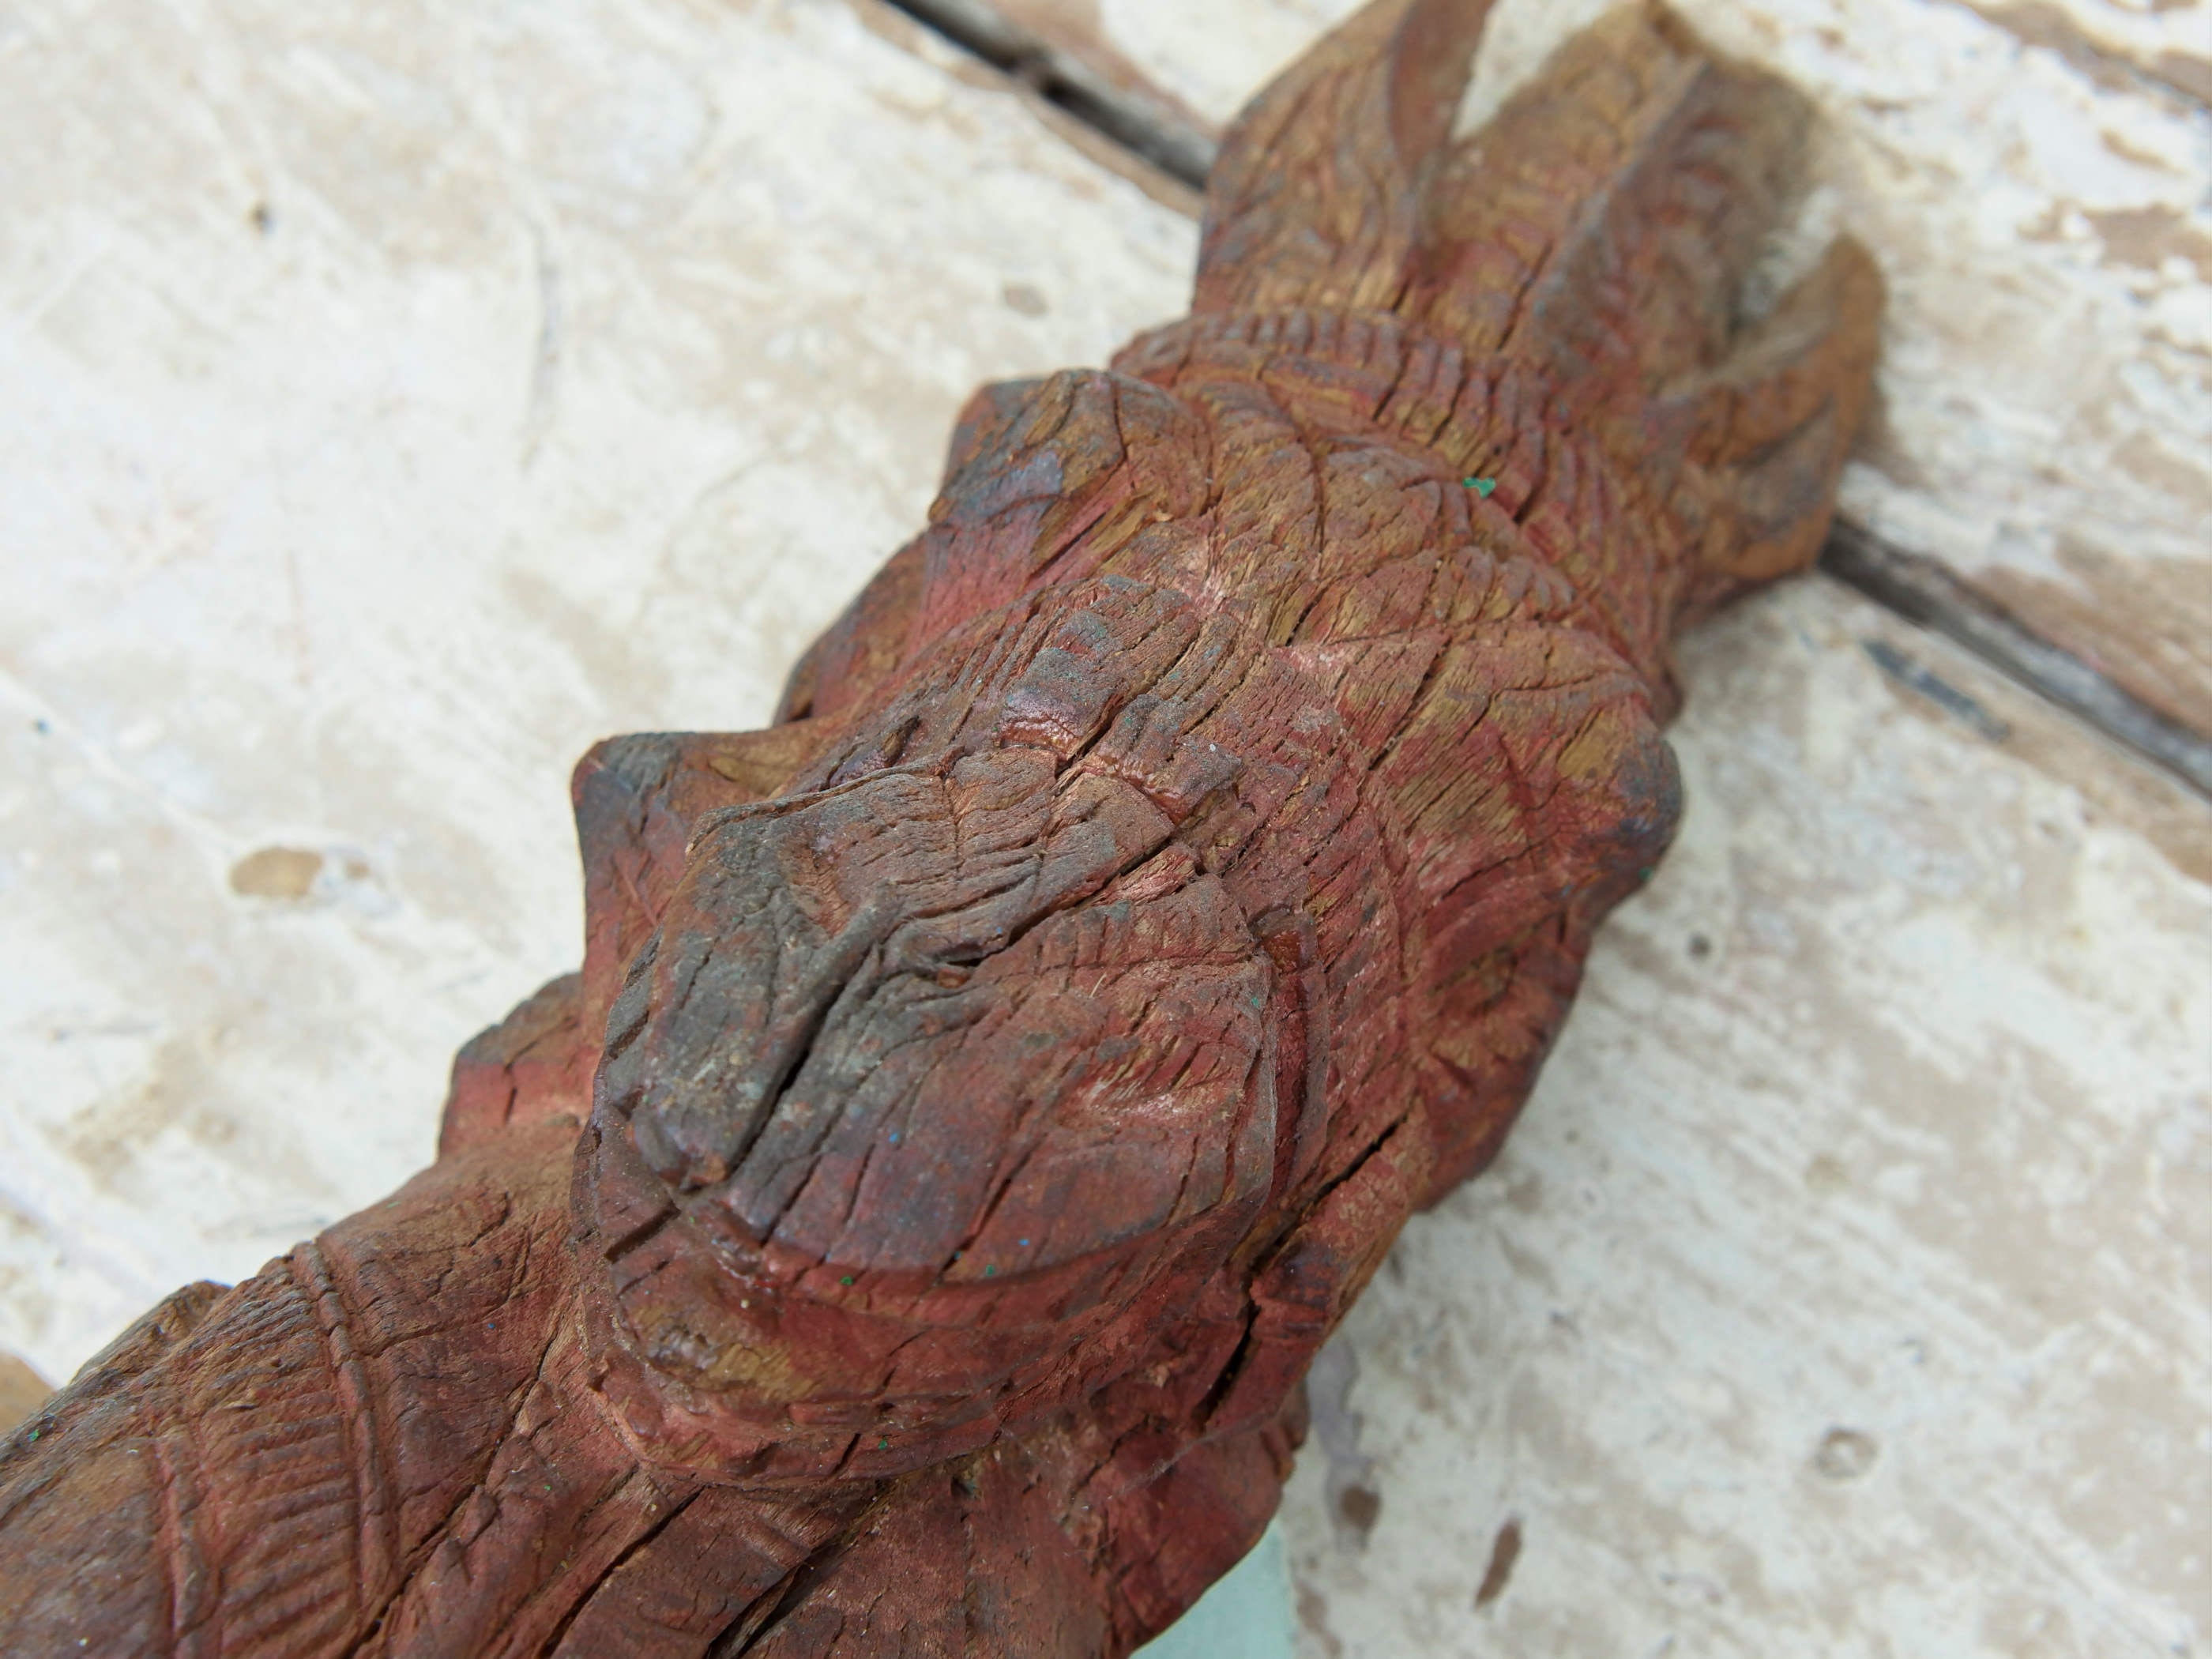 Antica statua indiana raffigurante un cavallo in legno di teak inciso, databile primi 900. Unico e conservato perfettamente, si nota la patina del tempo e l'usura naturale dell'oggetto.dimensioni 10x8 h30cm